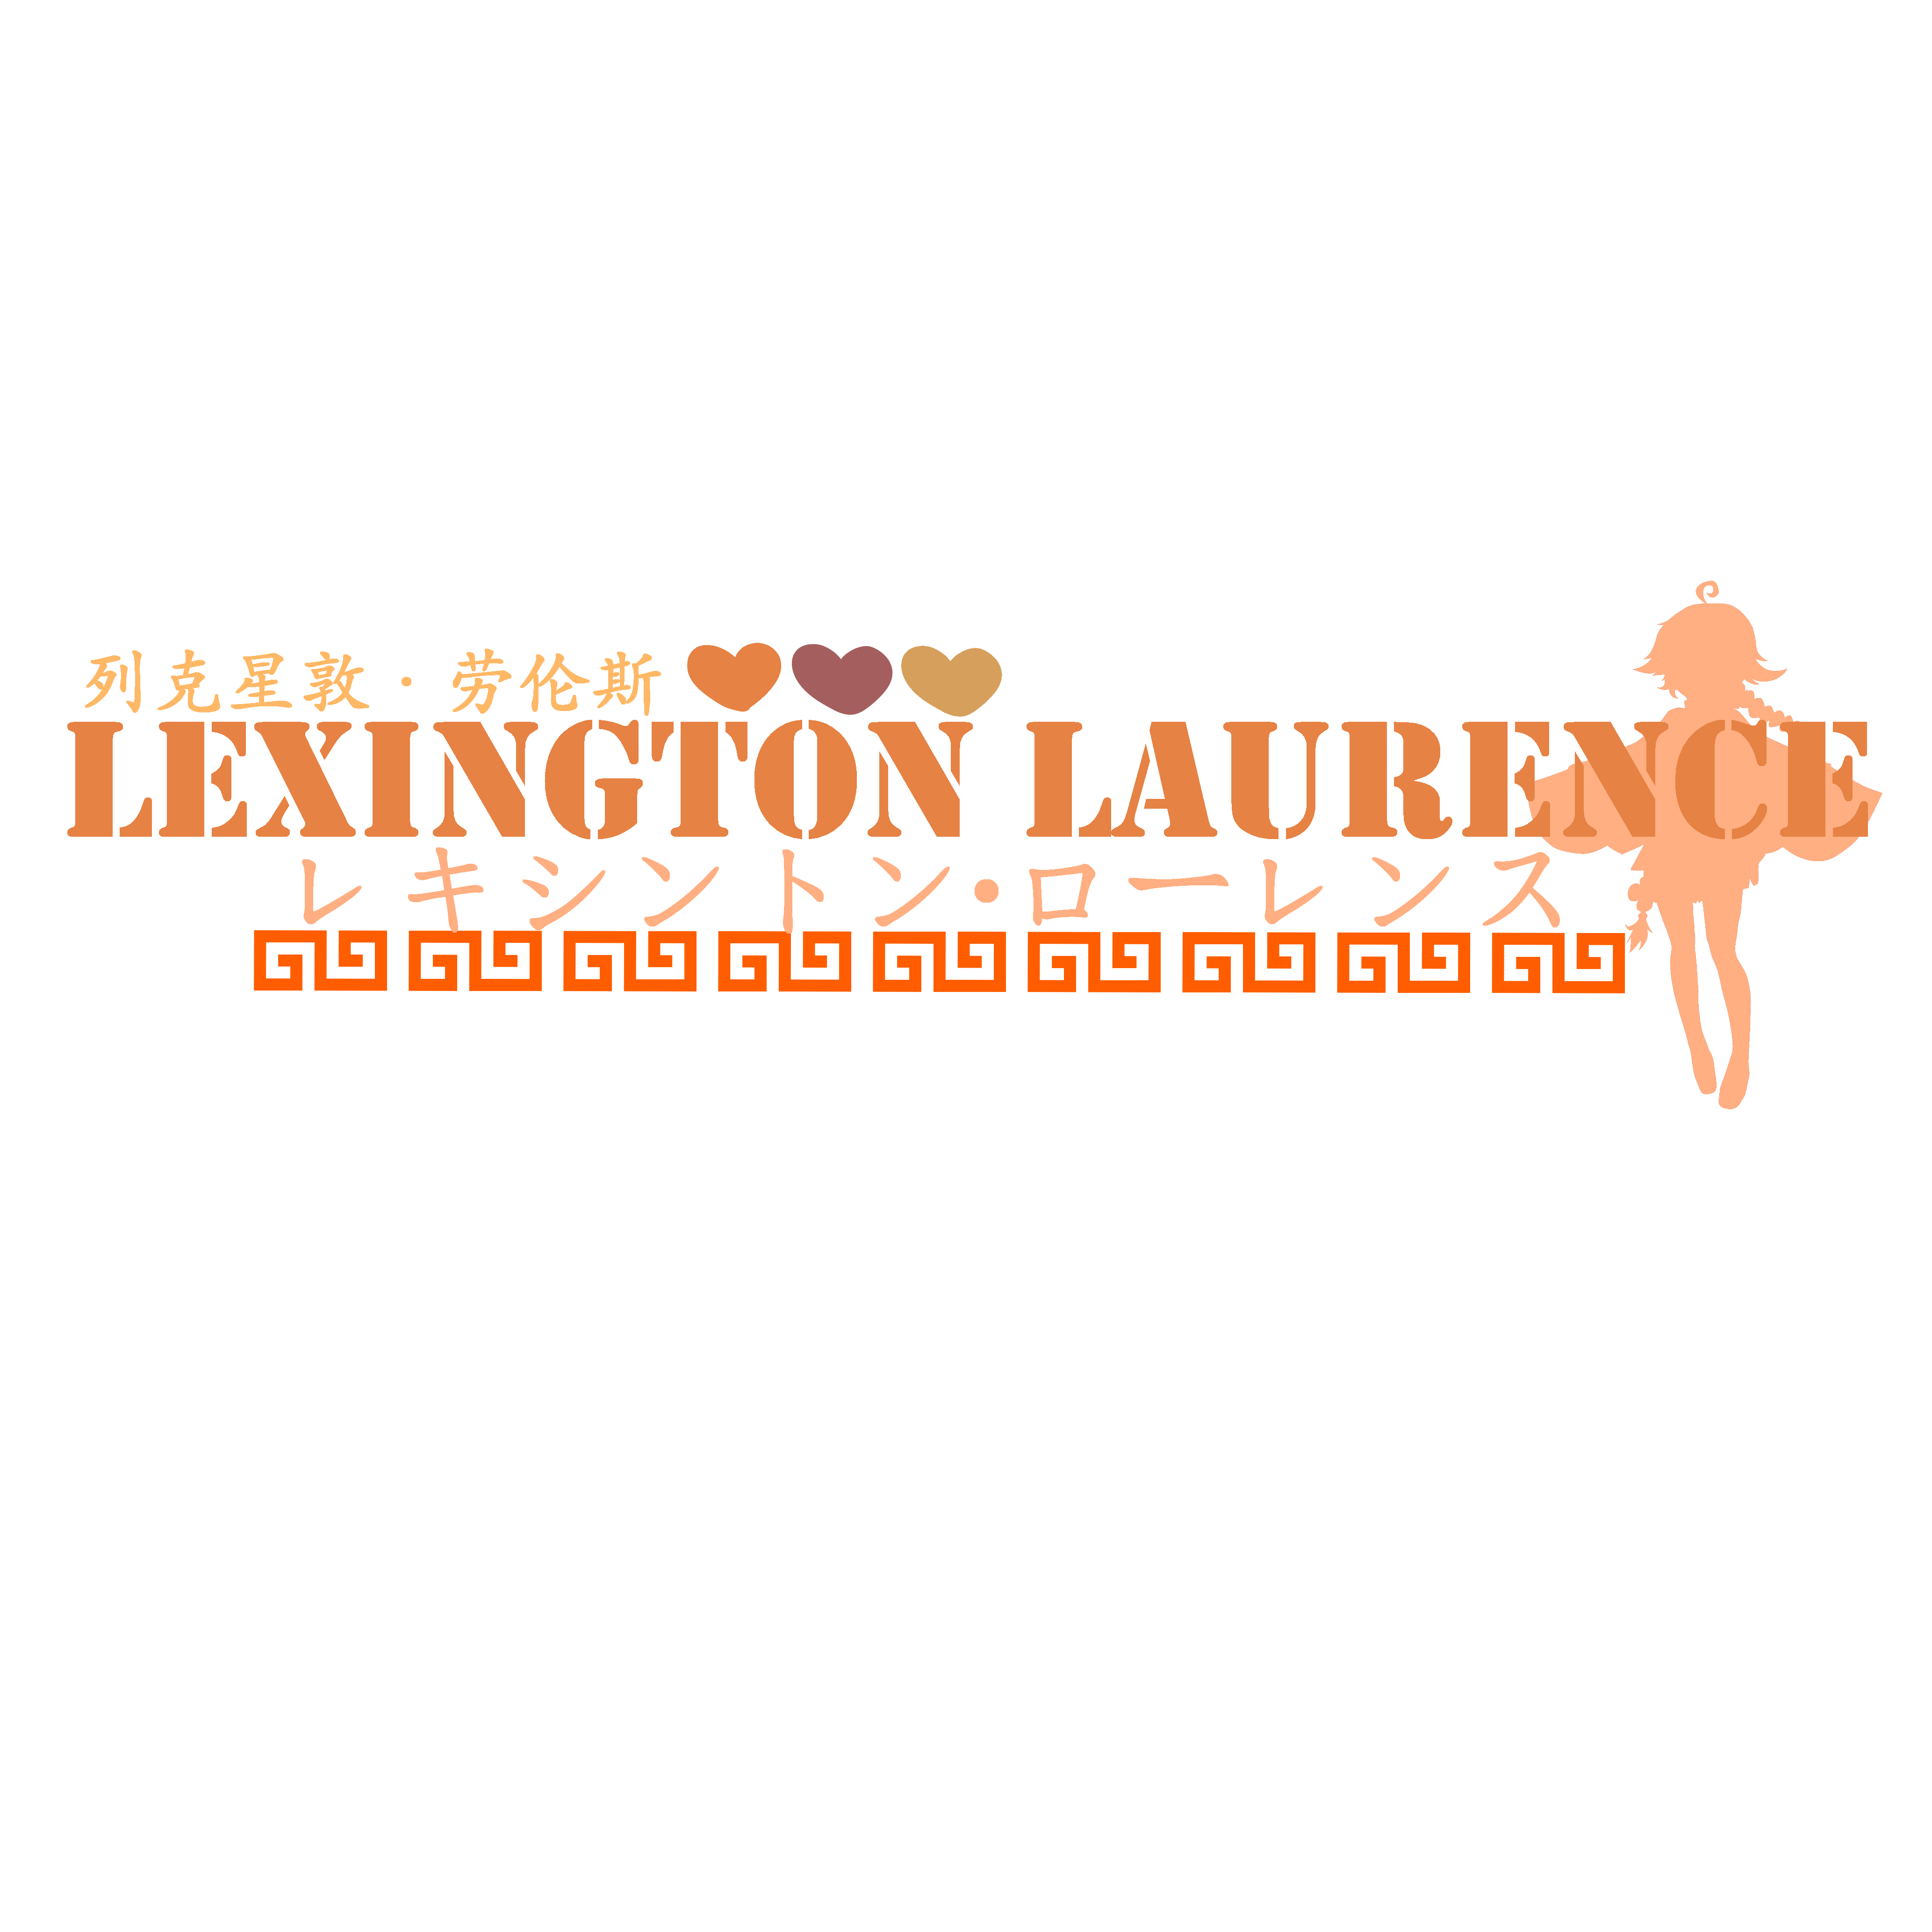 列克星敦·劳伦斯 频道logo.png